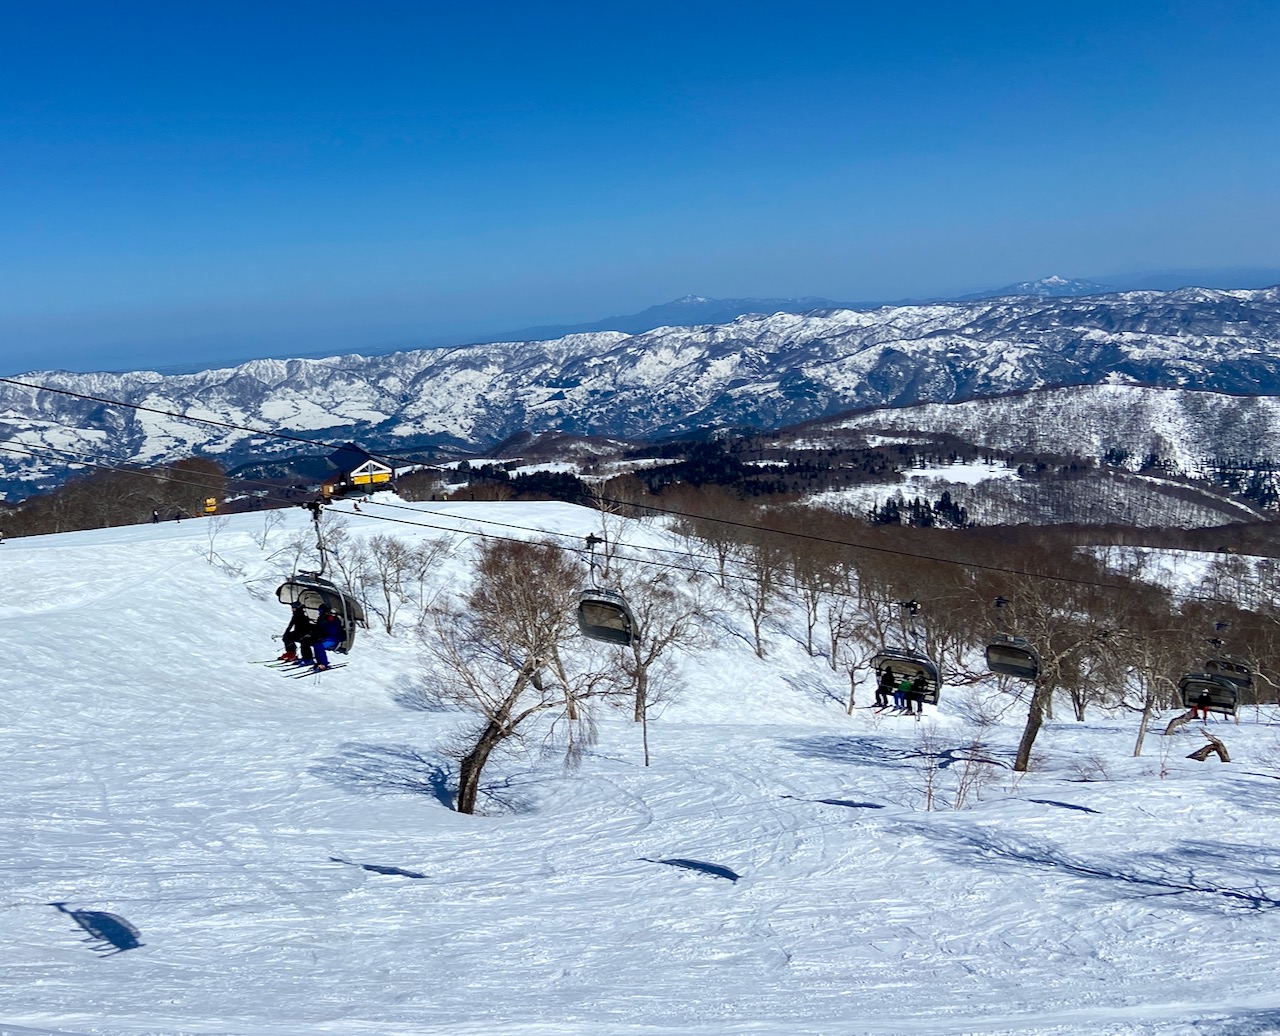 Easter Ski Nozawa Japan 